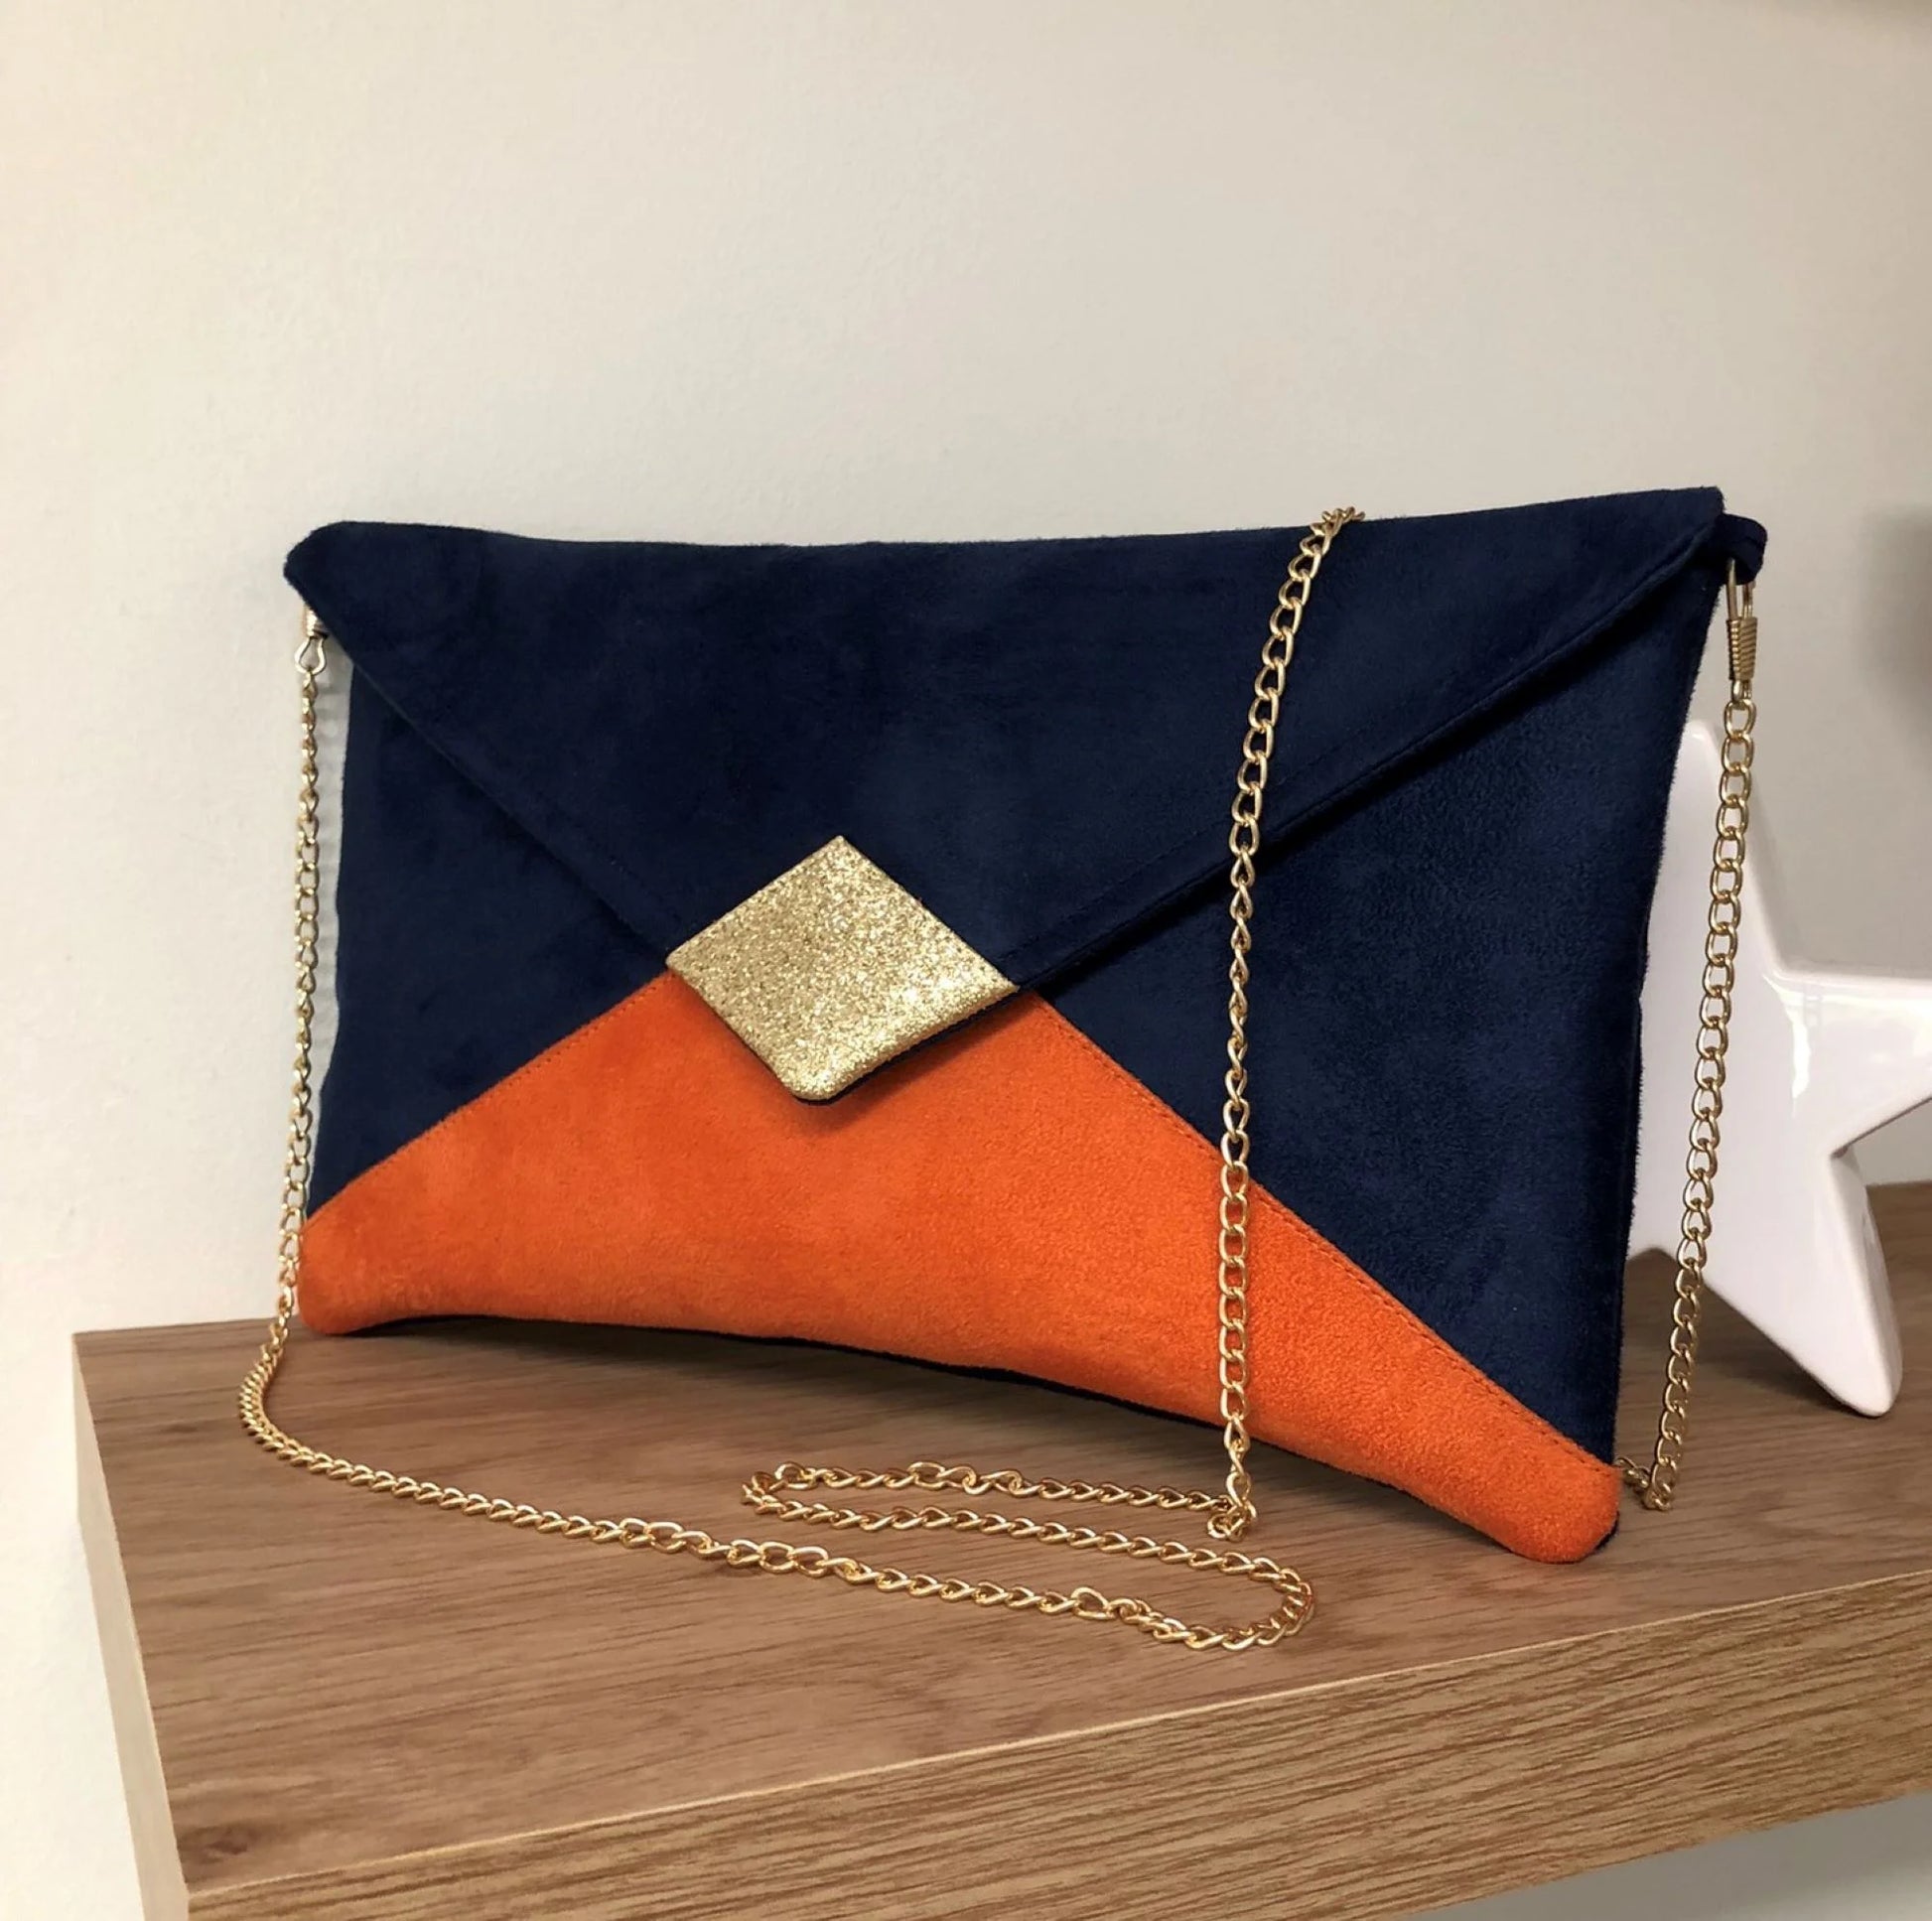 le sac pochette Isa bleu marine et orange à paillettes dorées, avec chainette amovible.